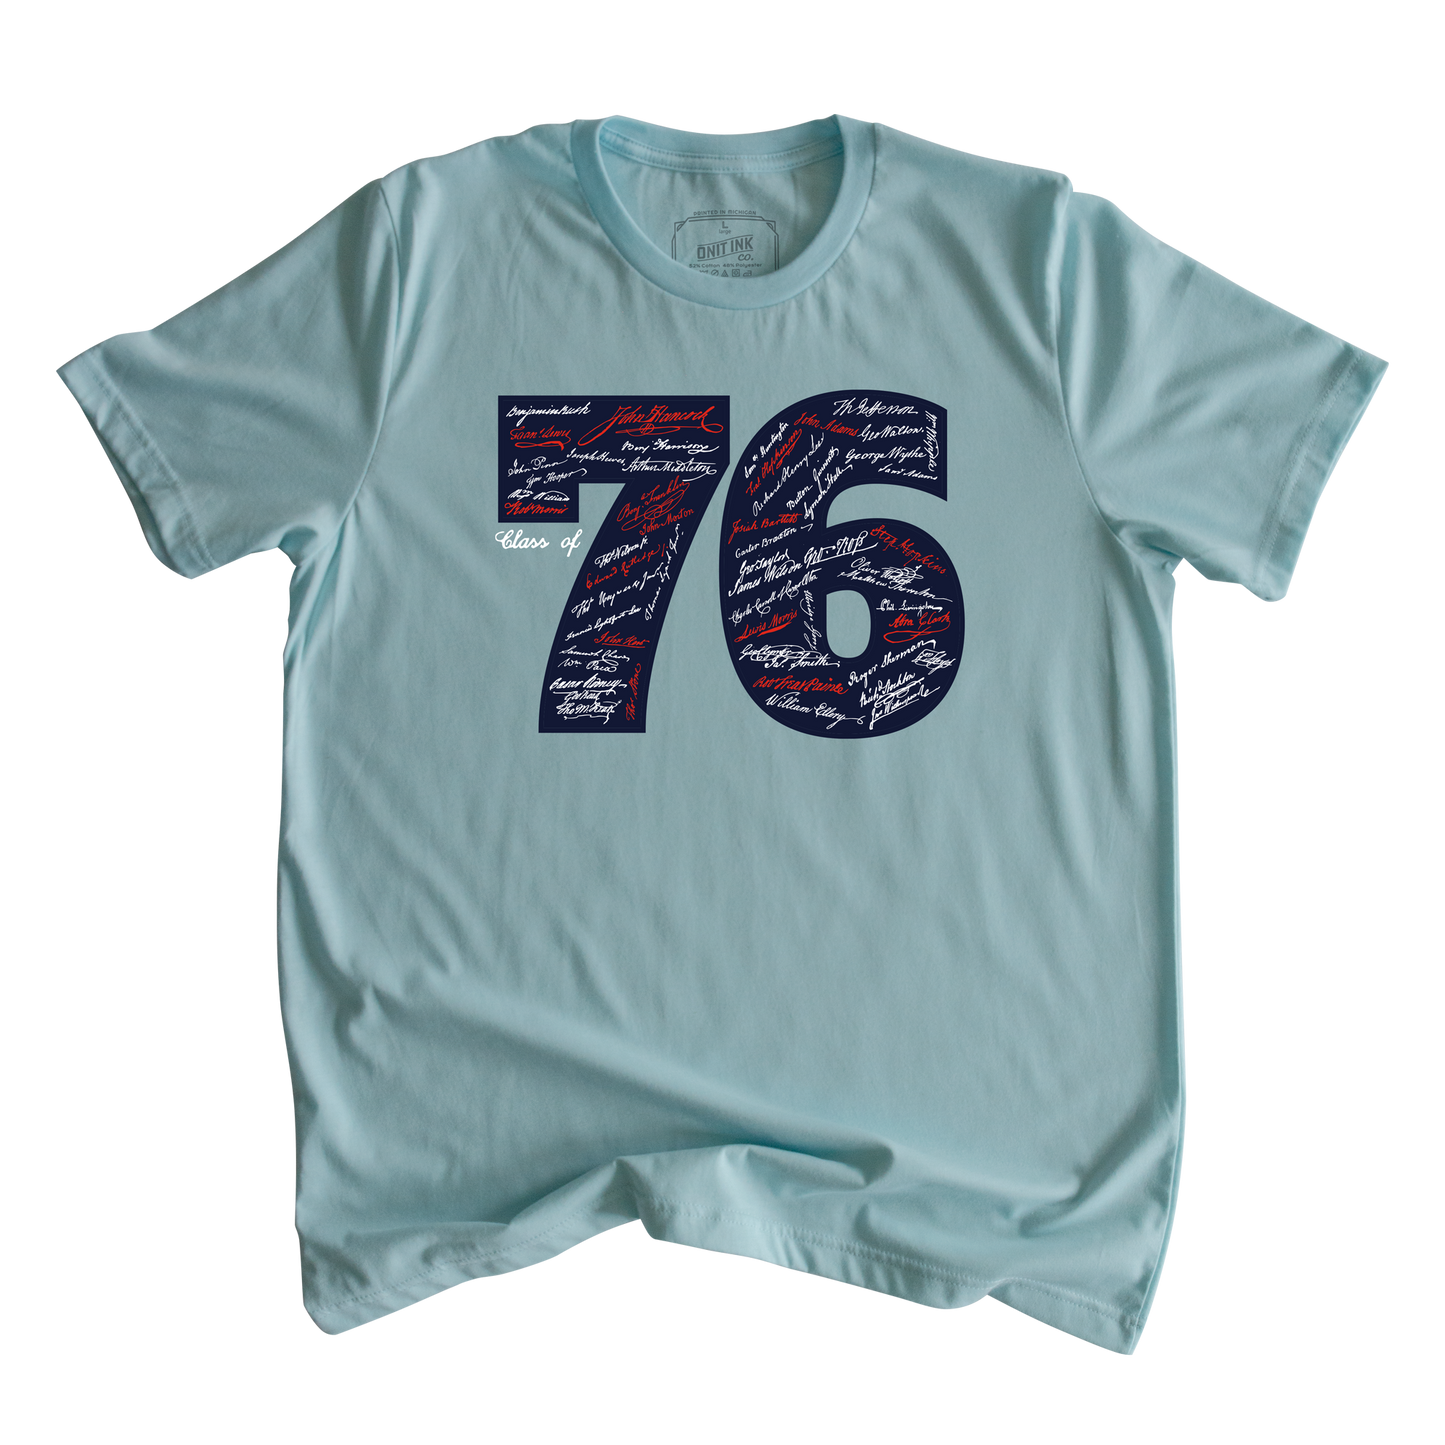 Class of '76 T-Shirt